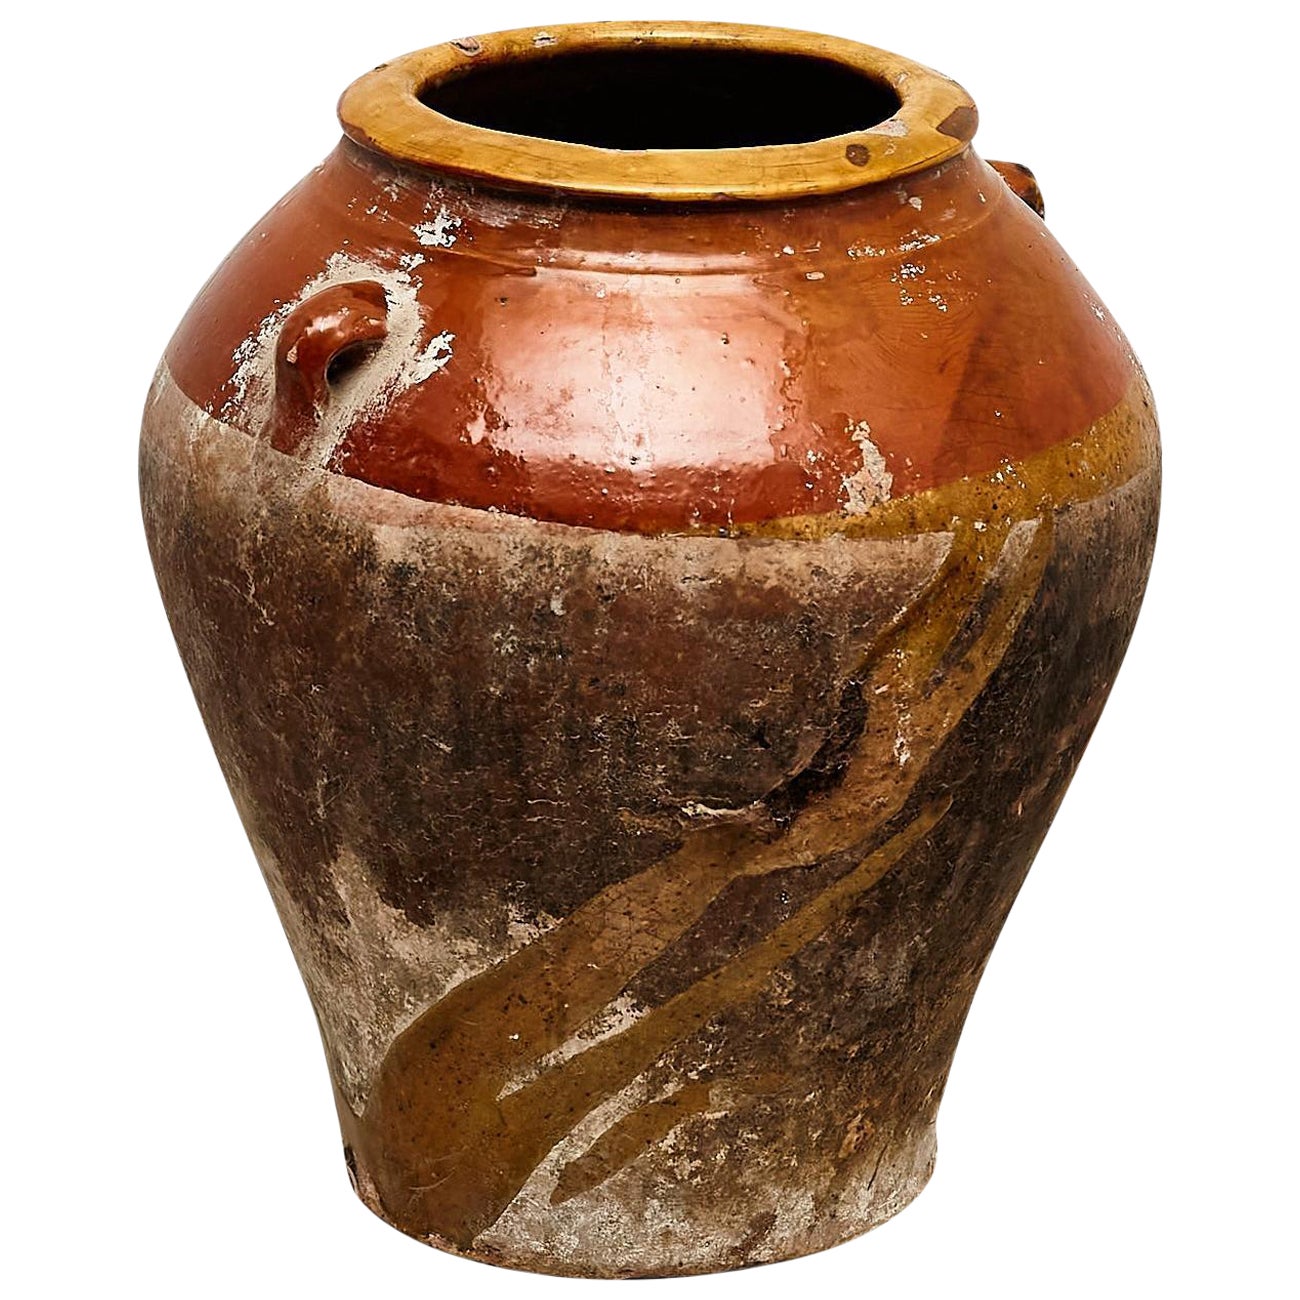 Traditionelle spanische Keramikvase des frühen 20. Jahrhunderts